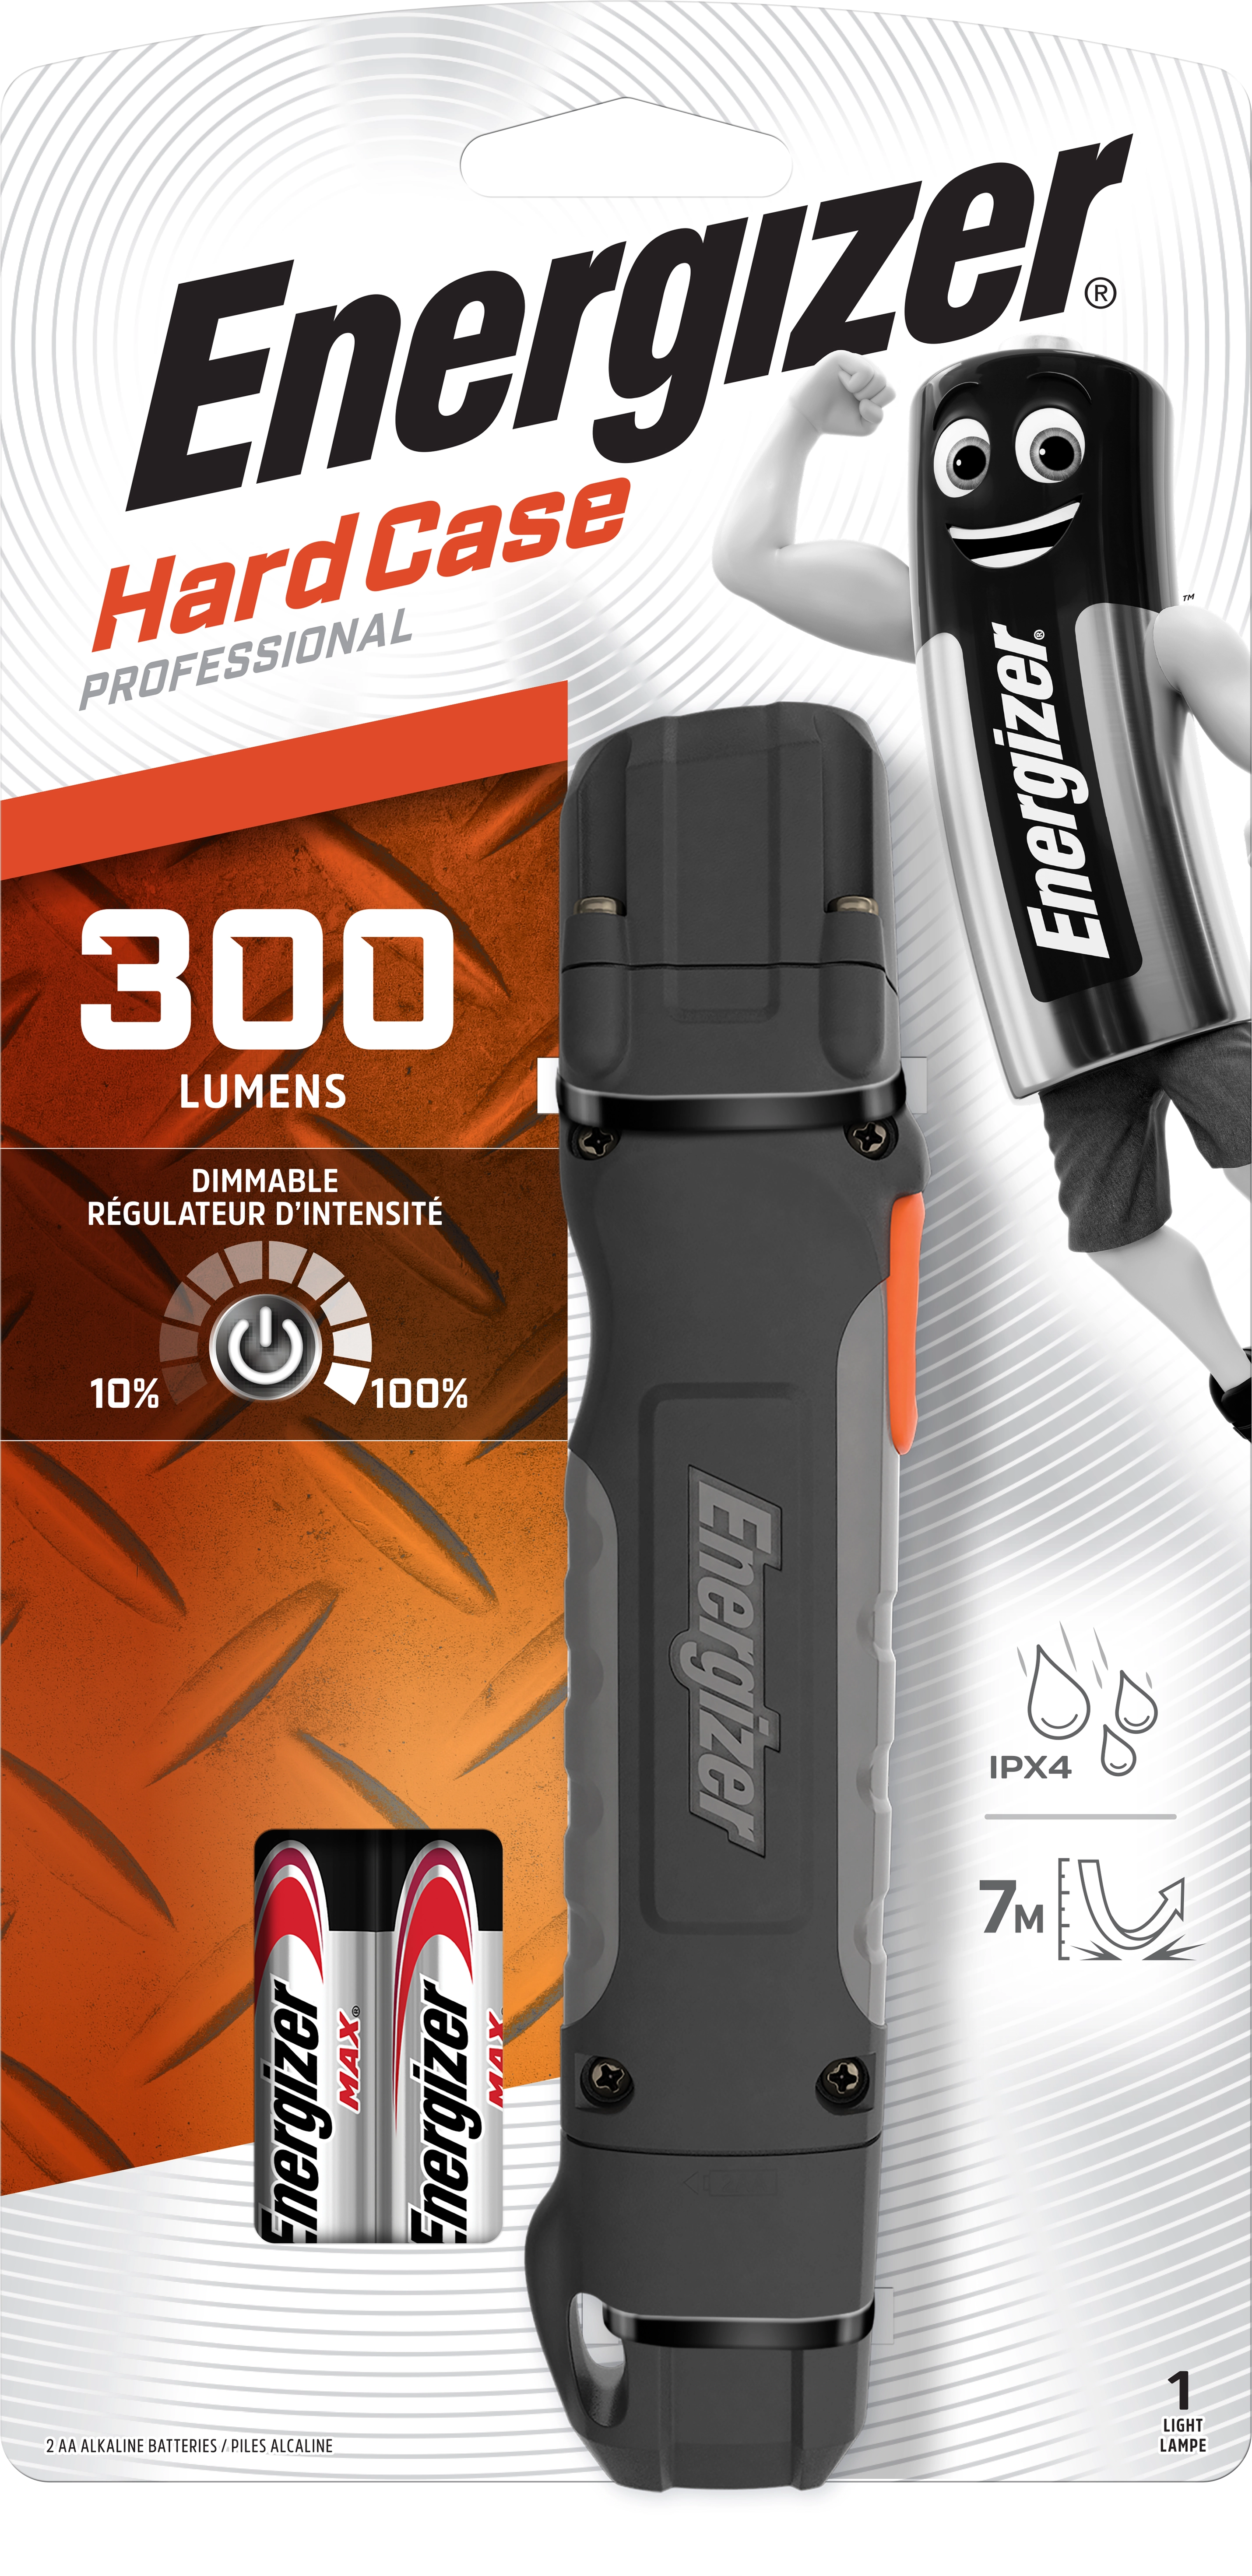 Energizer Torcia LED portatile Professionale Hard Case Handheld